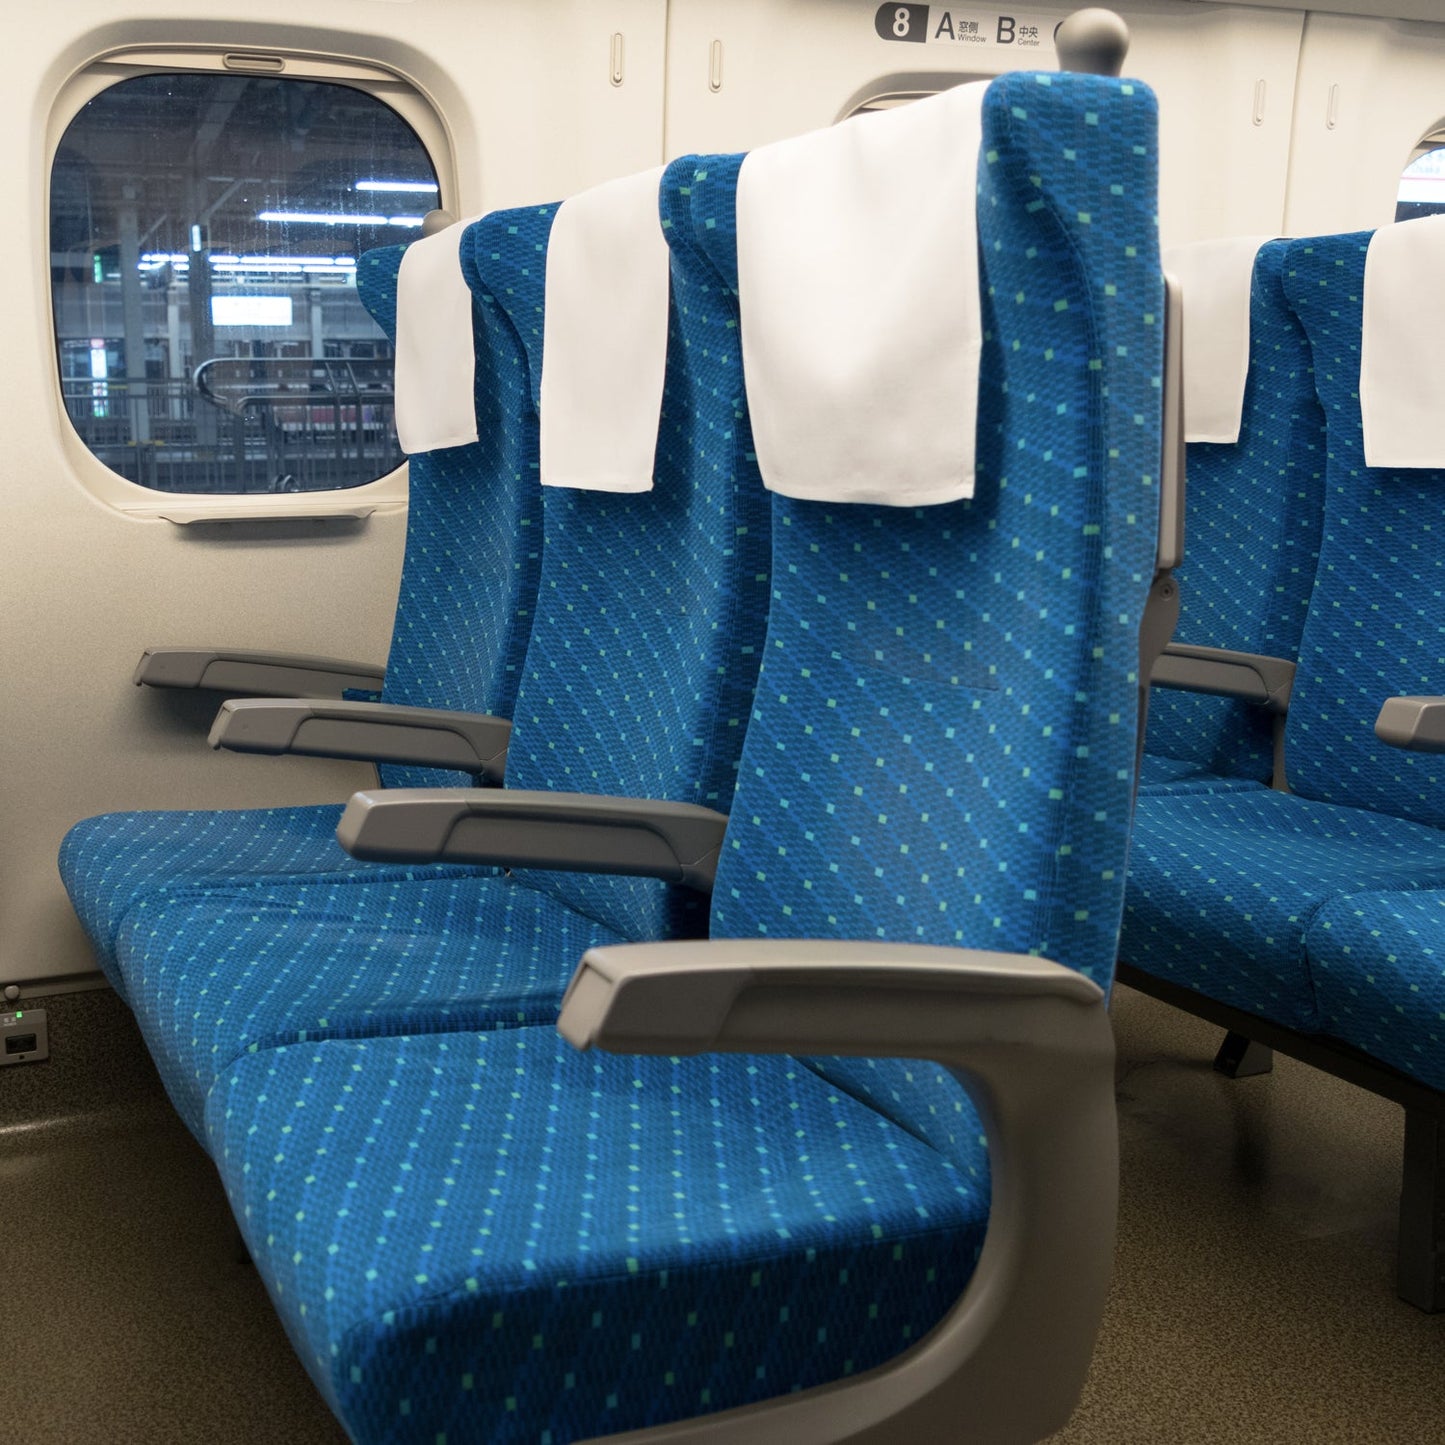 東海道新幹線N700系typeA普通車の座席